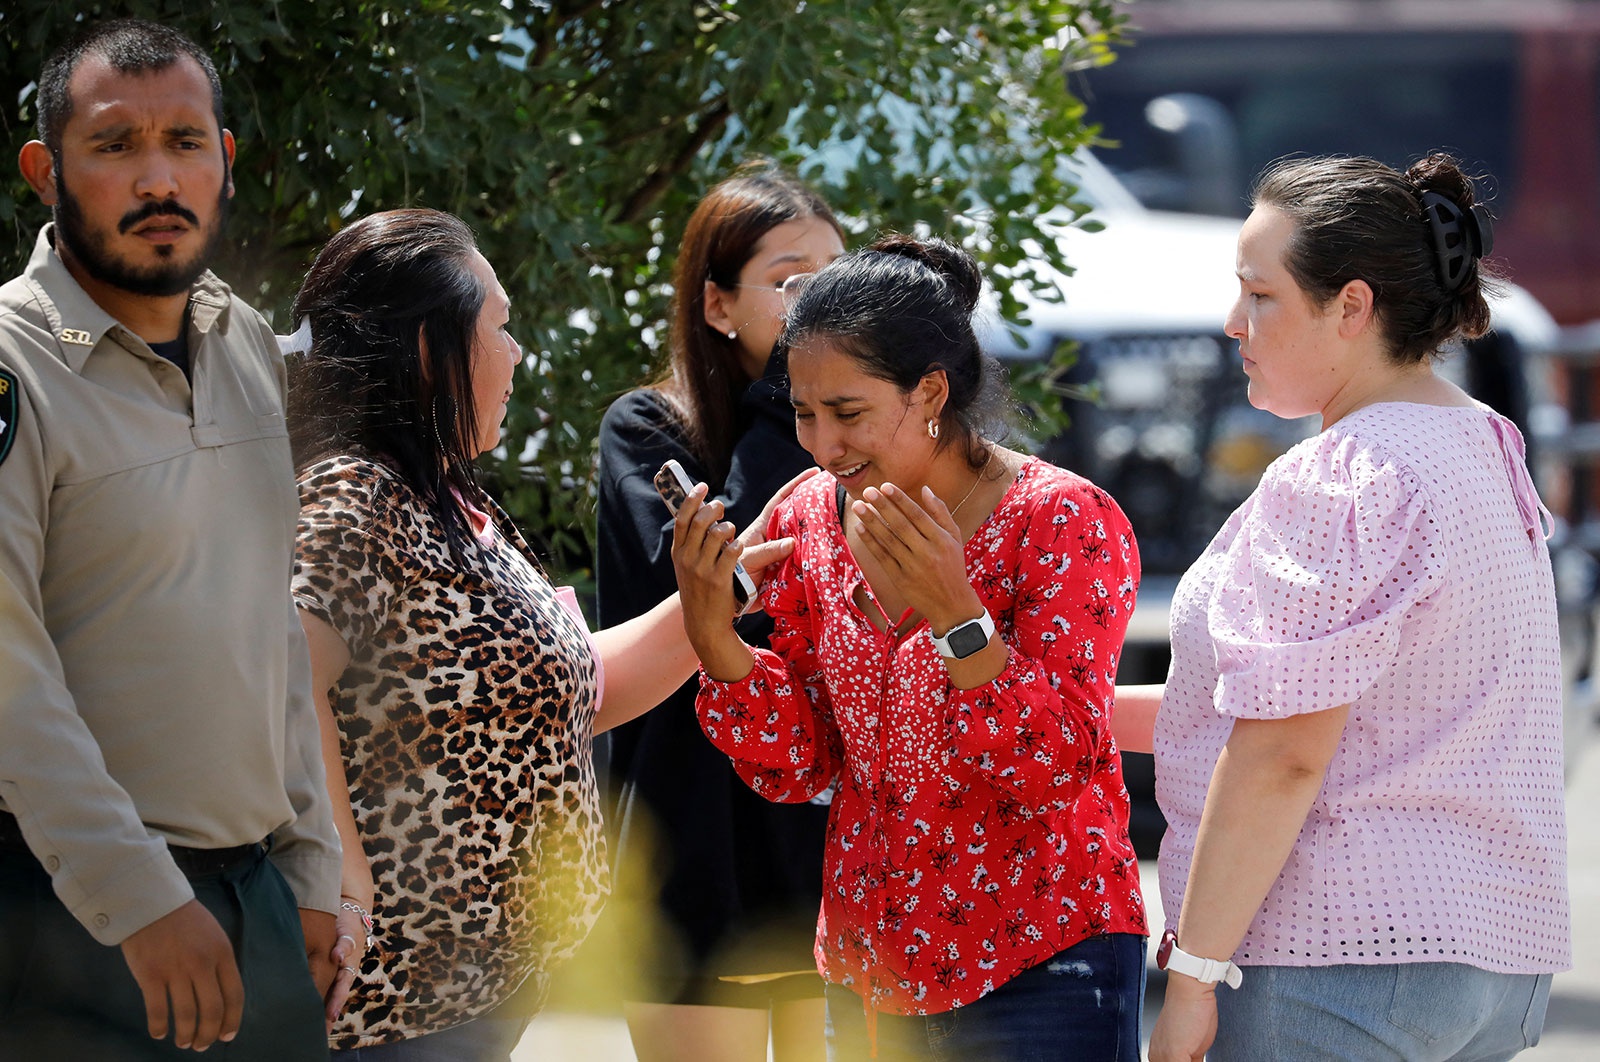 Xả súng chấn động tại trường học ở Texas khiến 21 người thiệt mạng - Ảnh 3.